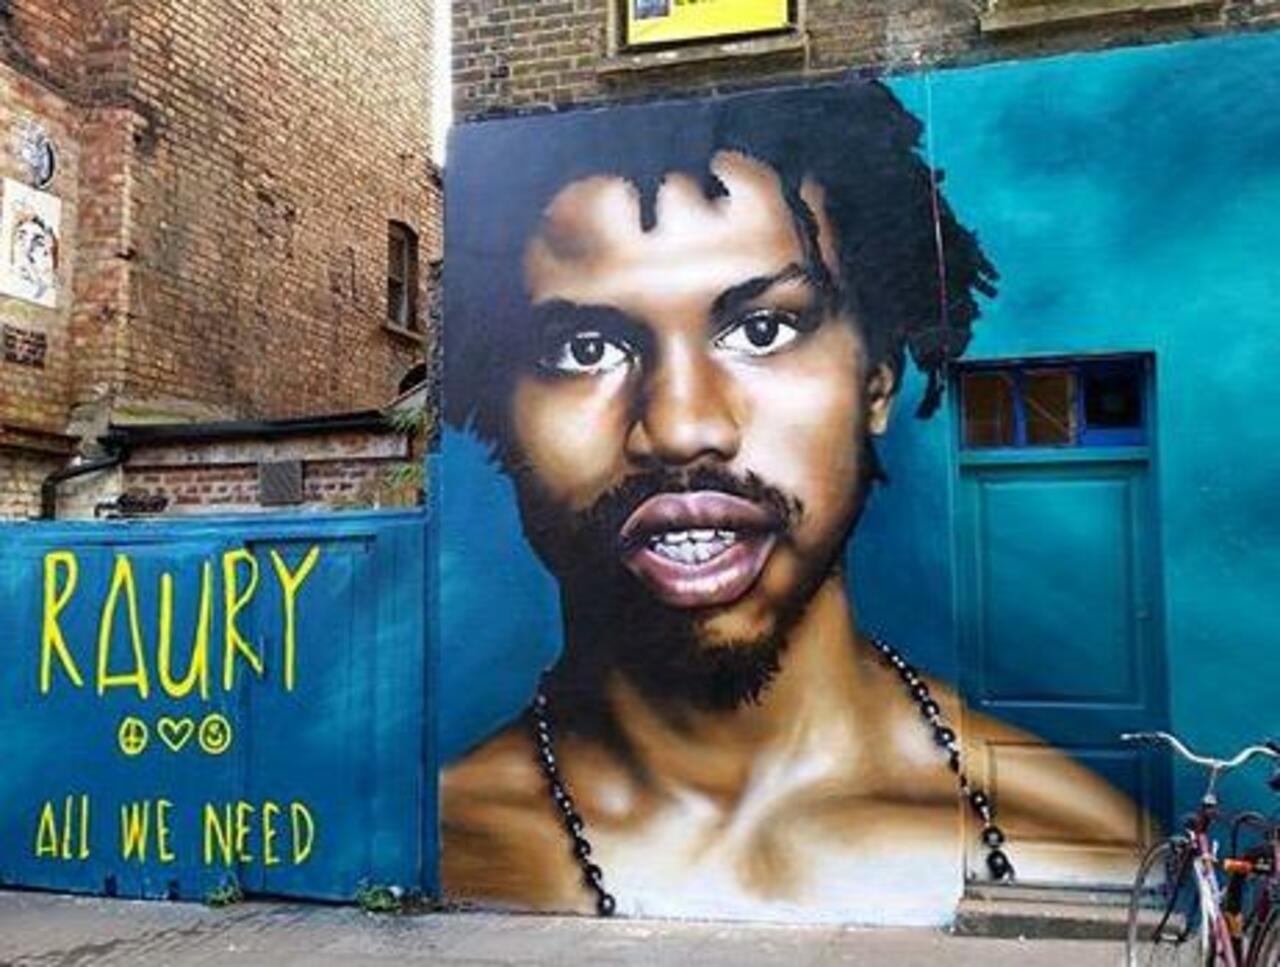 New tumblr post: "New Street Art of Raury by Olliver Switch in Brick Lane 

#art #graffiti #mural #streetart http://t.co/ZRDaJ7JbDt" …